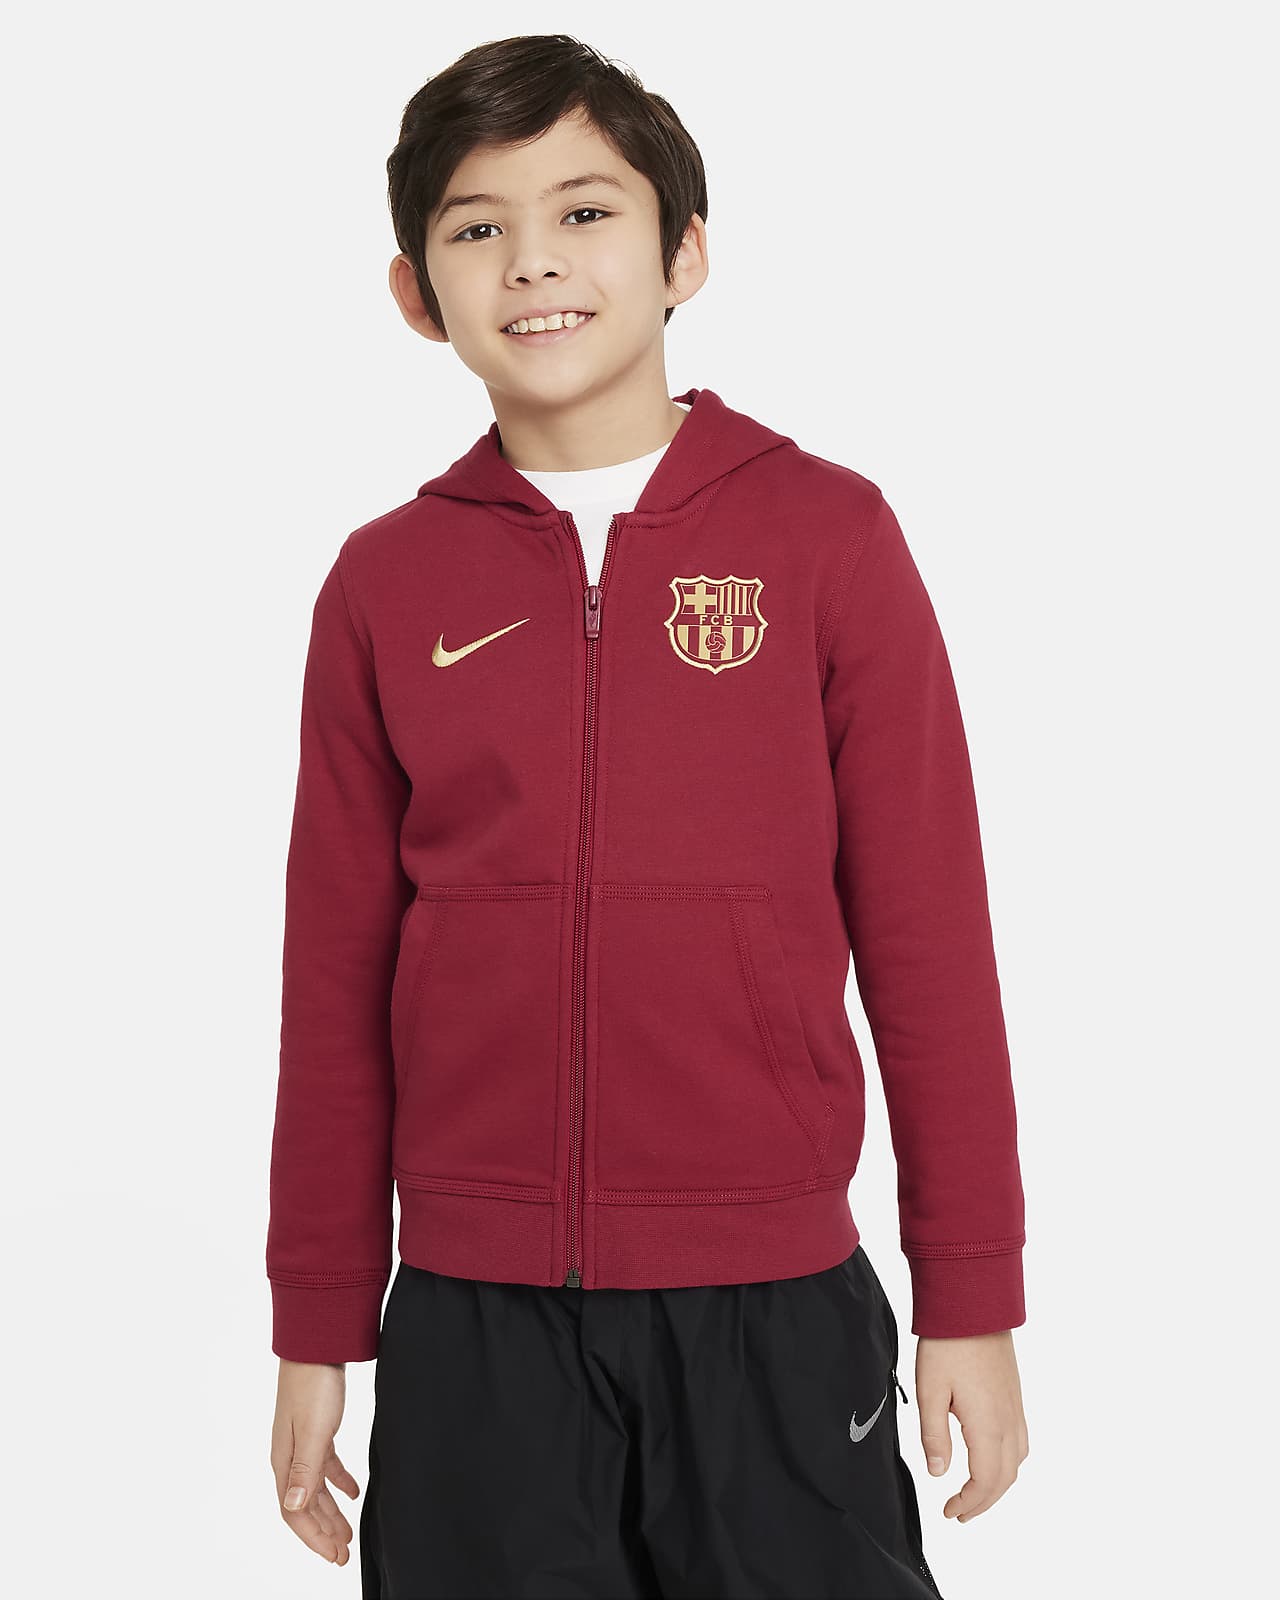 Fotbalová mikina Nike FC Barcelona Club s kapucí a zipem po celé délce pro větší děti (chlapce)